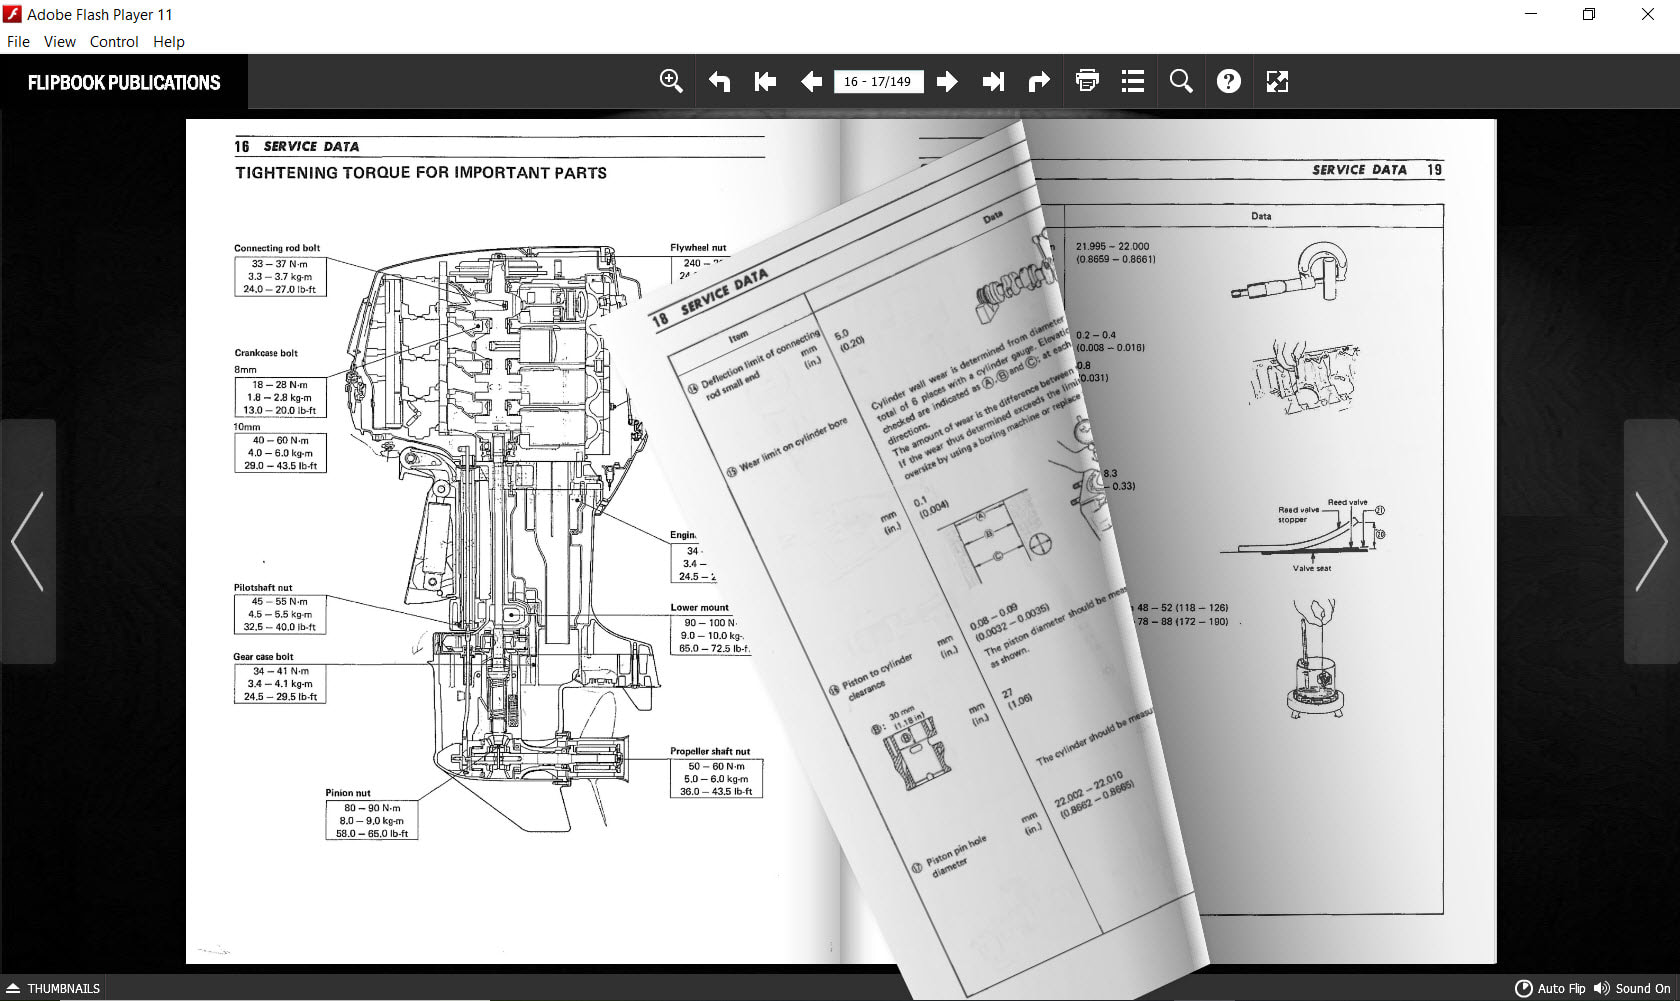 2021 Polaris Ranger XP 1000 OEM Service Manual With Wiring Diagrams 9850046